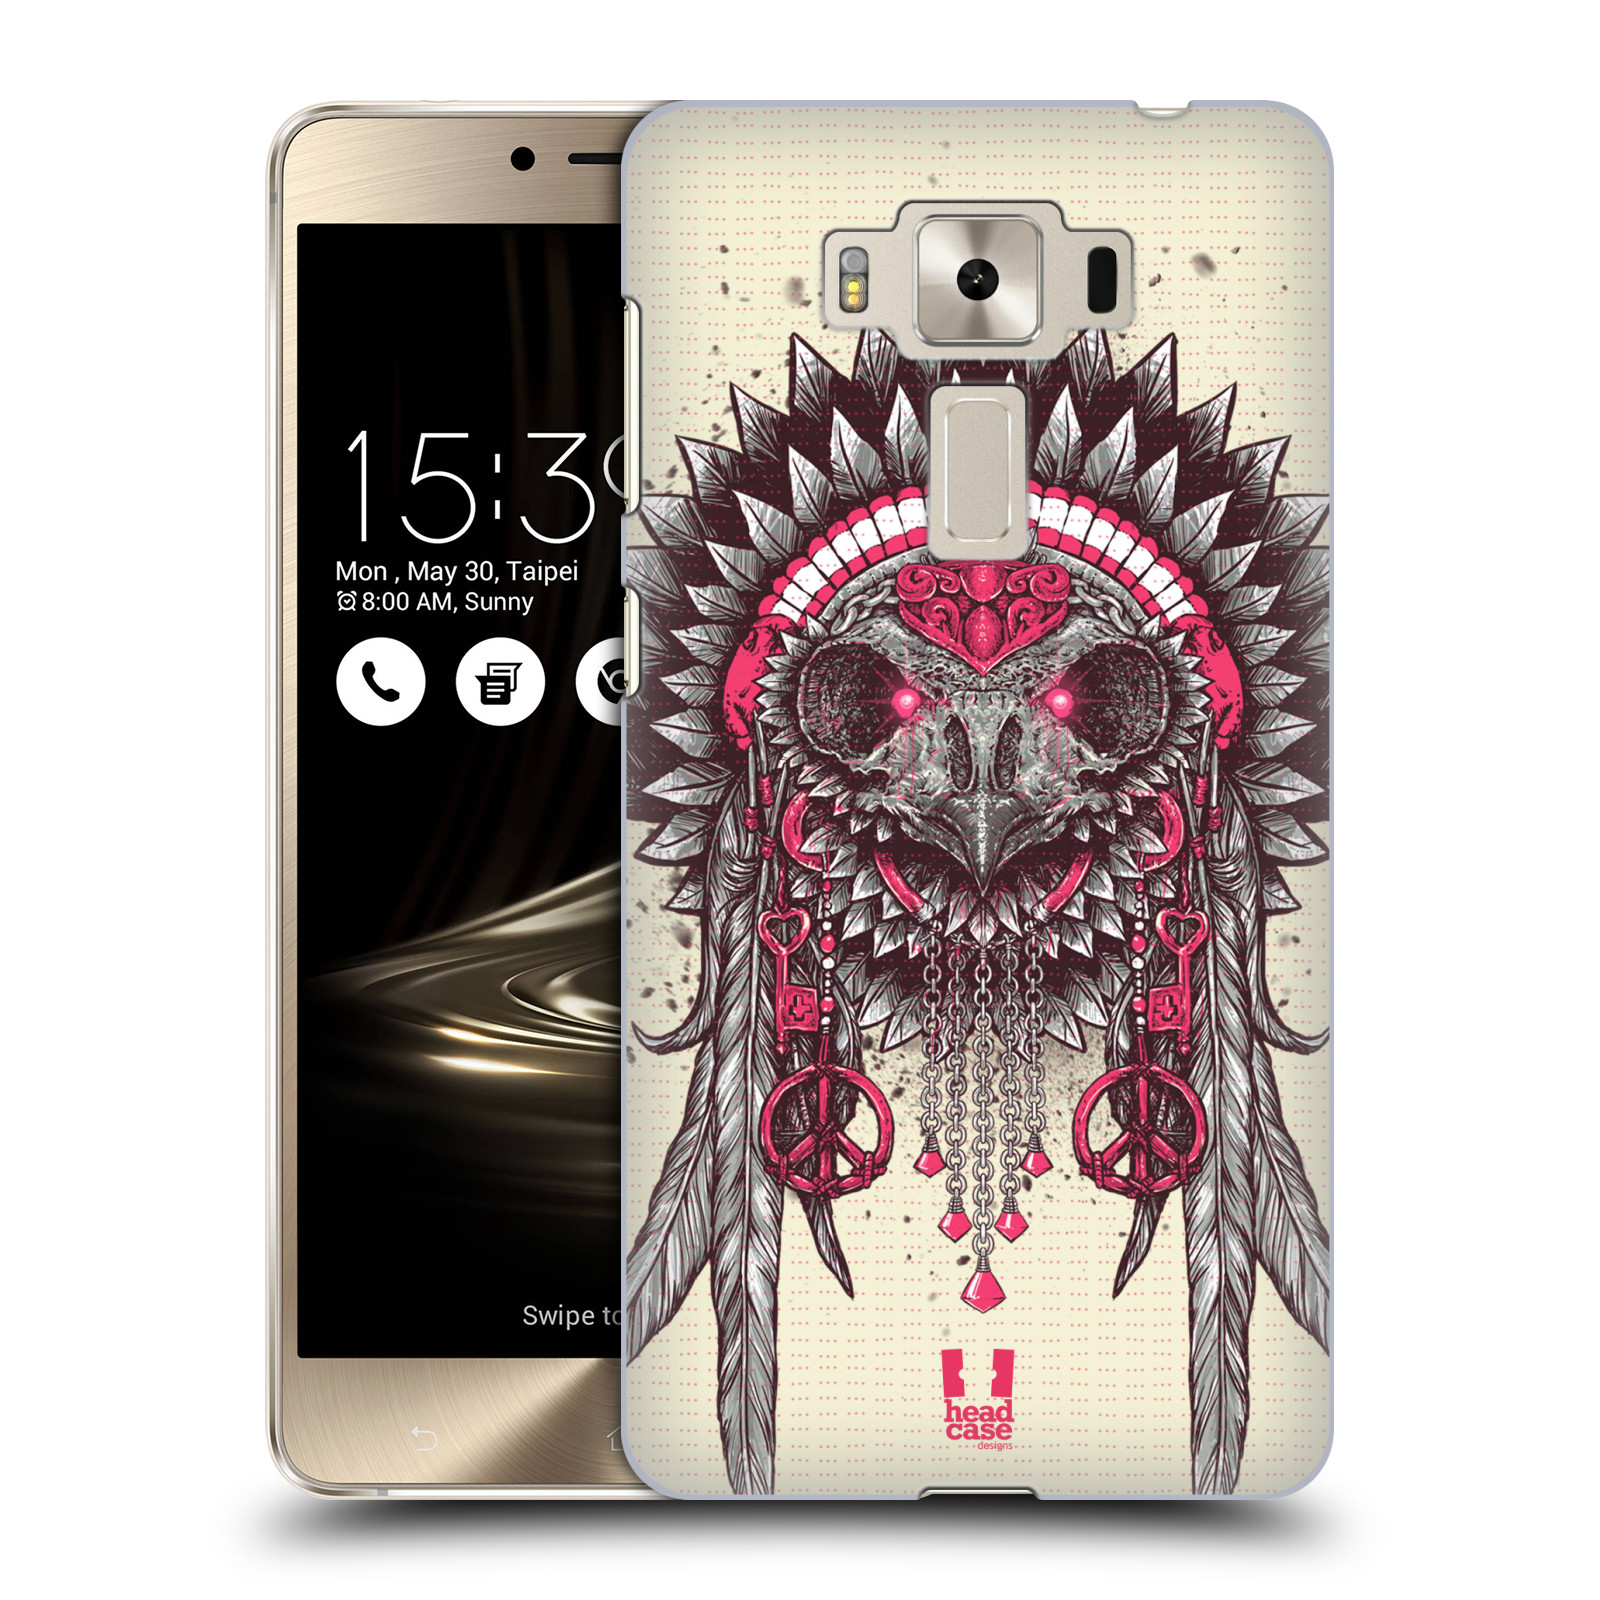 HEAD CASE plastový obal na mobil Asus Zenfone 3 DELUXE ZS550KL vzor Etnické sovy růžová a šedá